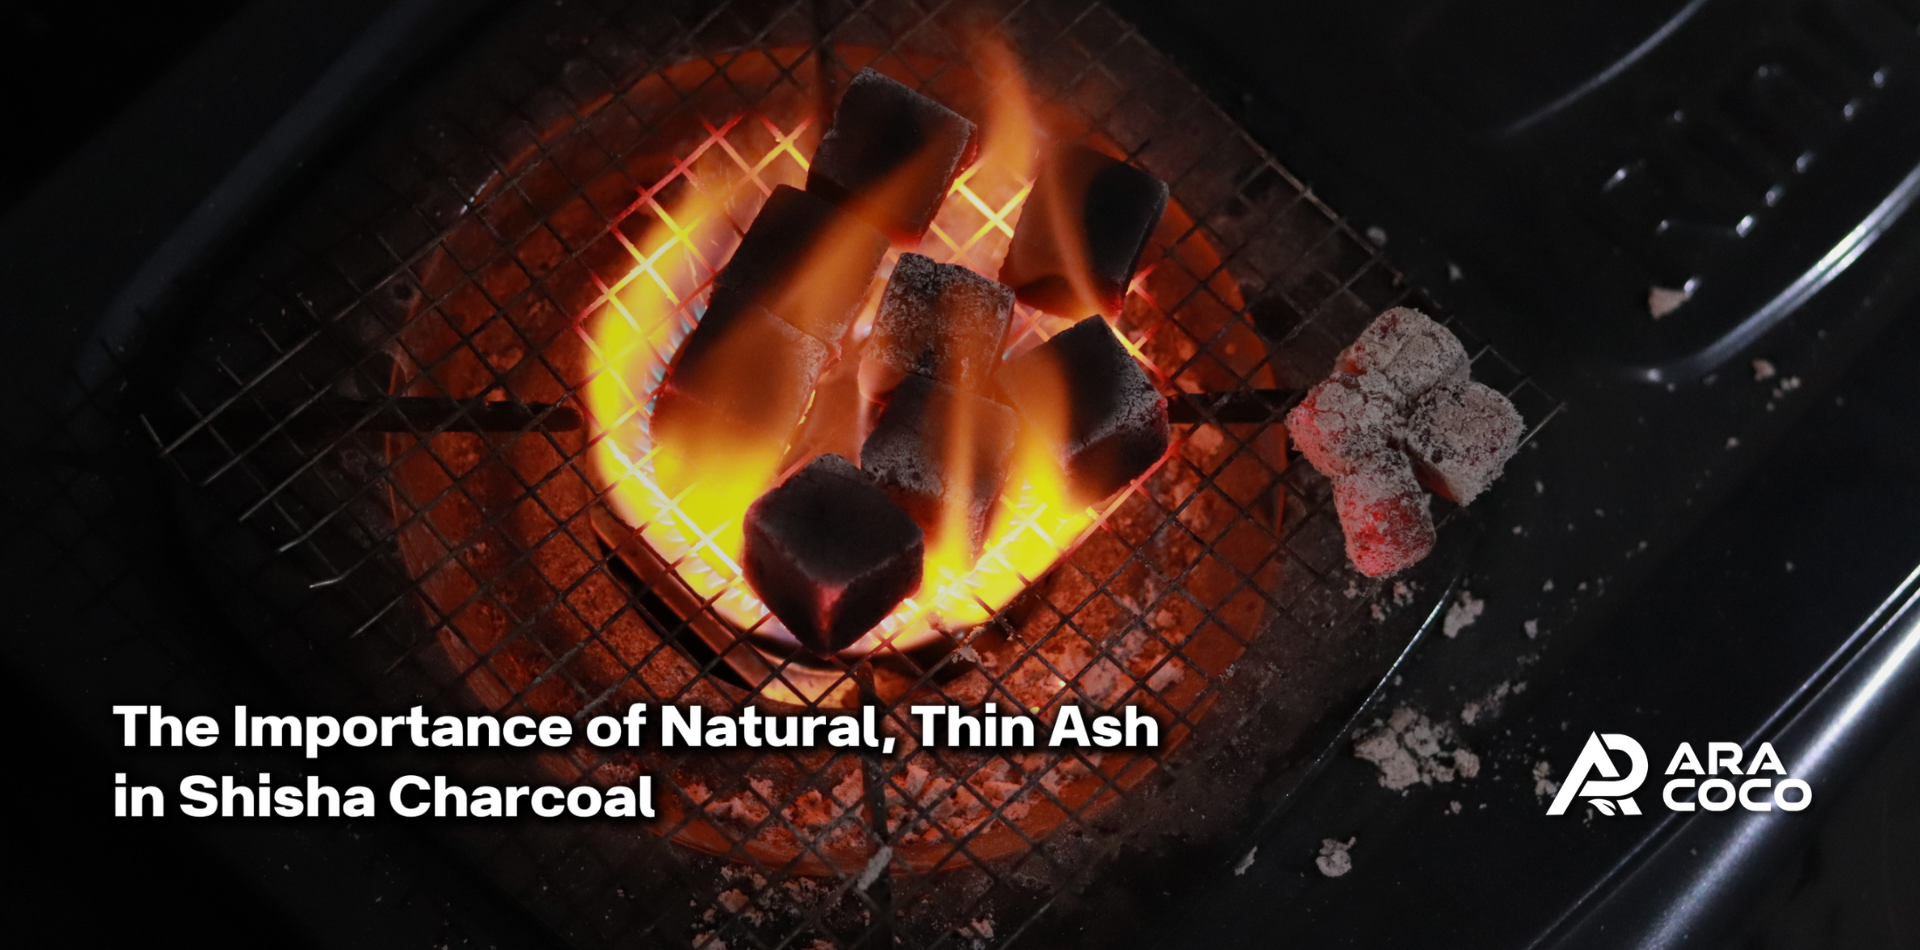 The Importance of Natural, Thin Ash in Shisha Charcoal